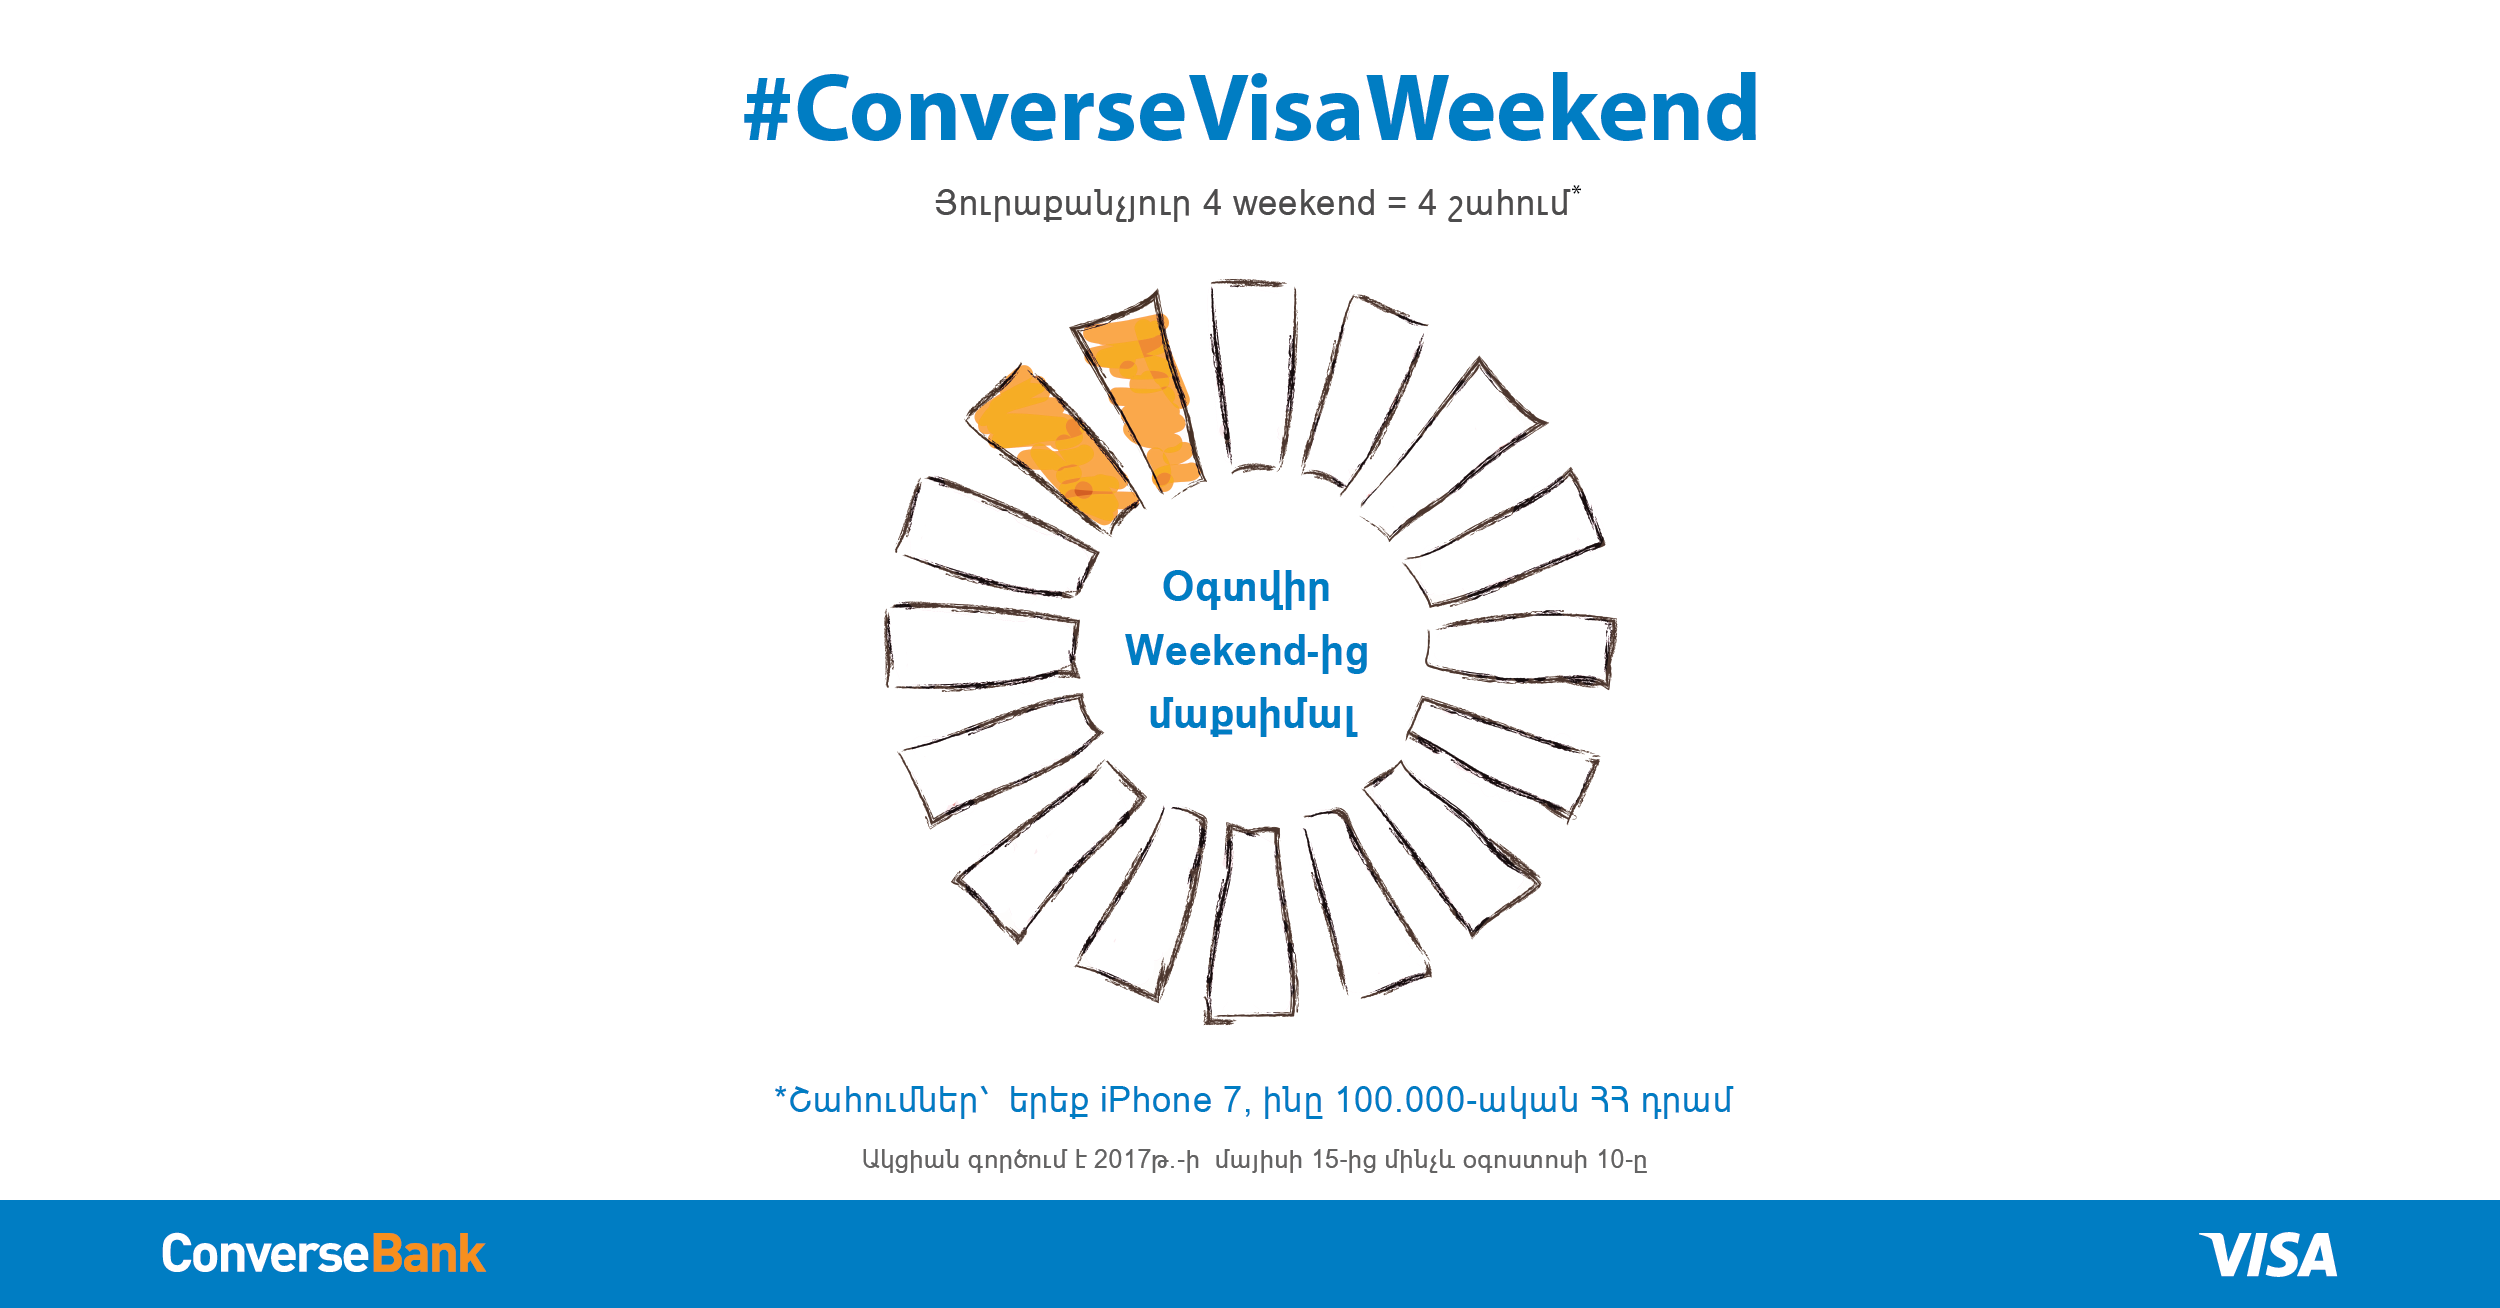 Կոնվերս Բանկը Visa քարտապանների համար գործարկել է #ConverseVisaWeekend ակցիան